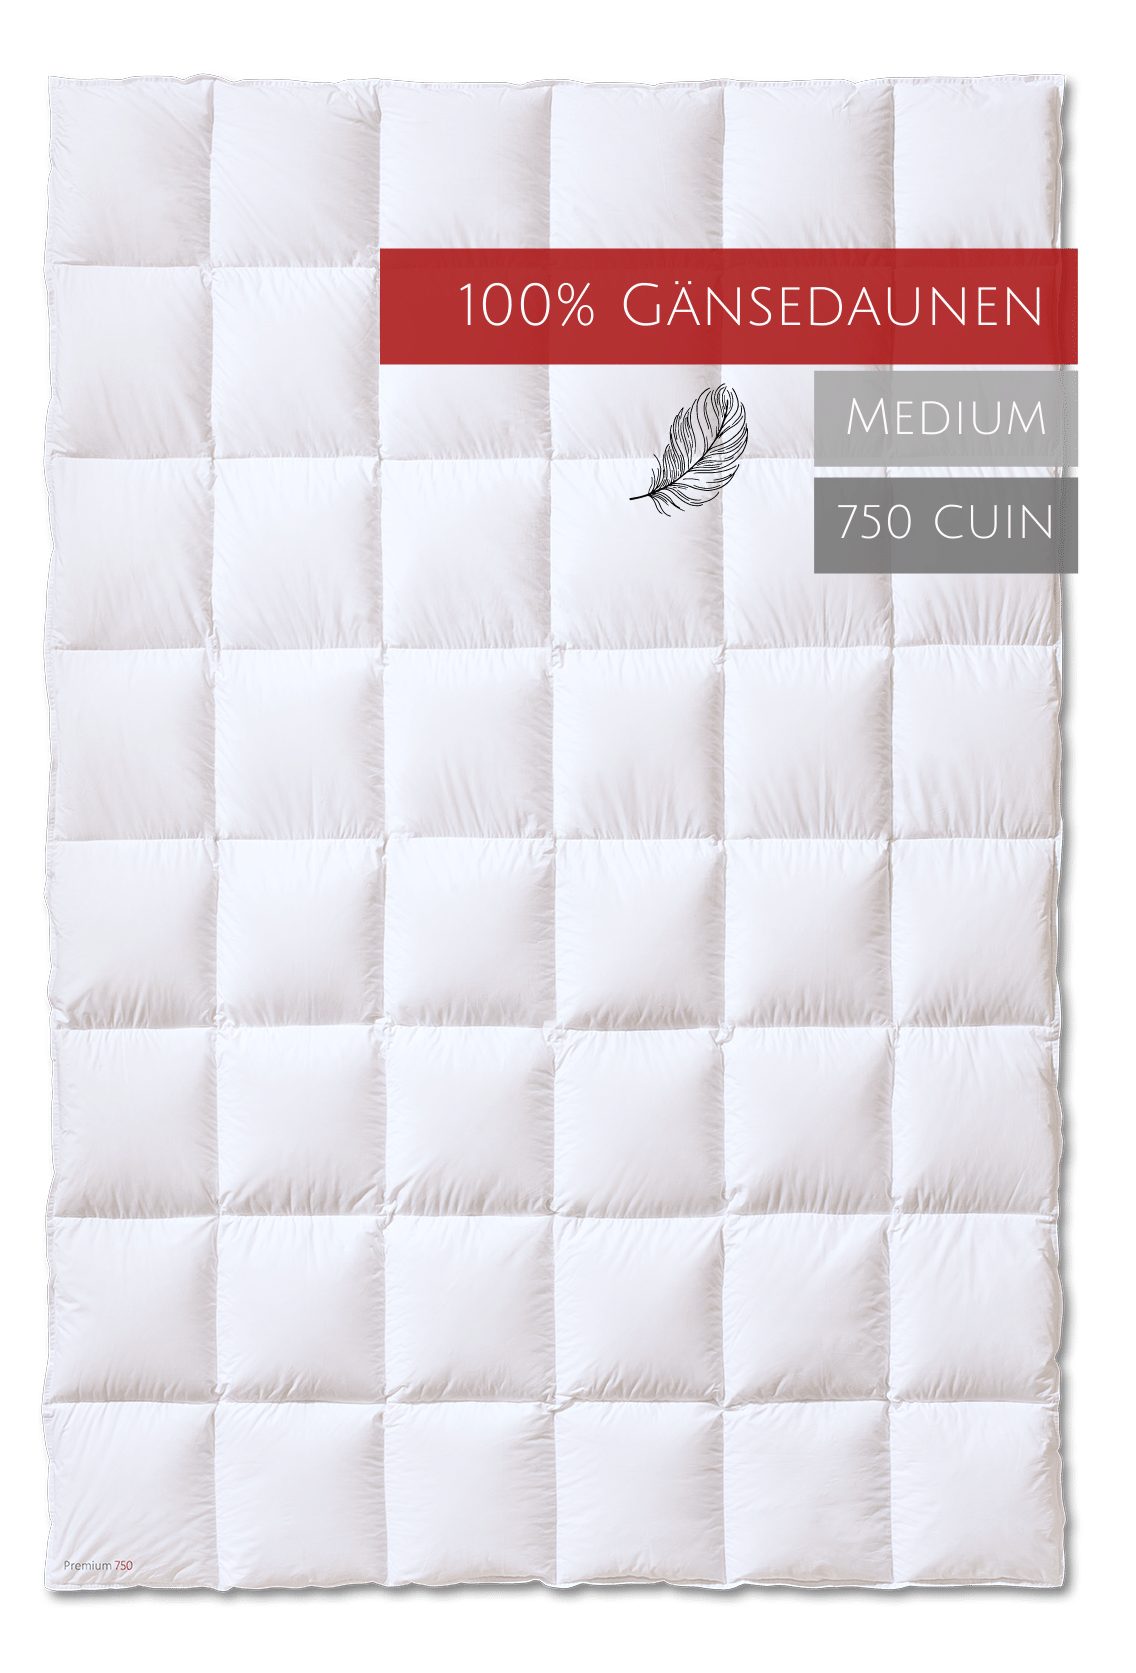 Gänsedaunenbettdecke, Premium 750, Kauffmann, Füllung: allergikerfreundlich 100% Baumwolle, 100% Bezug: Gänsedaunen